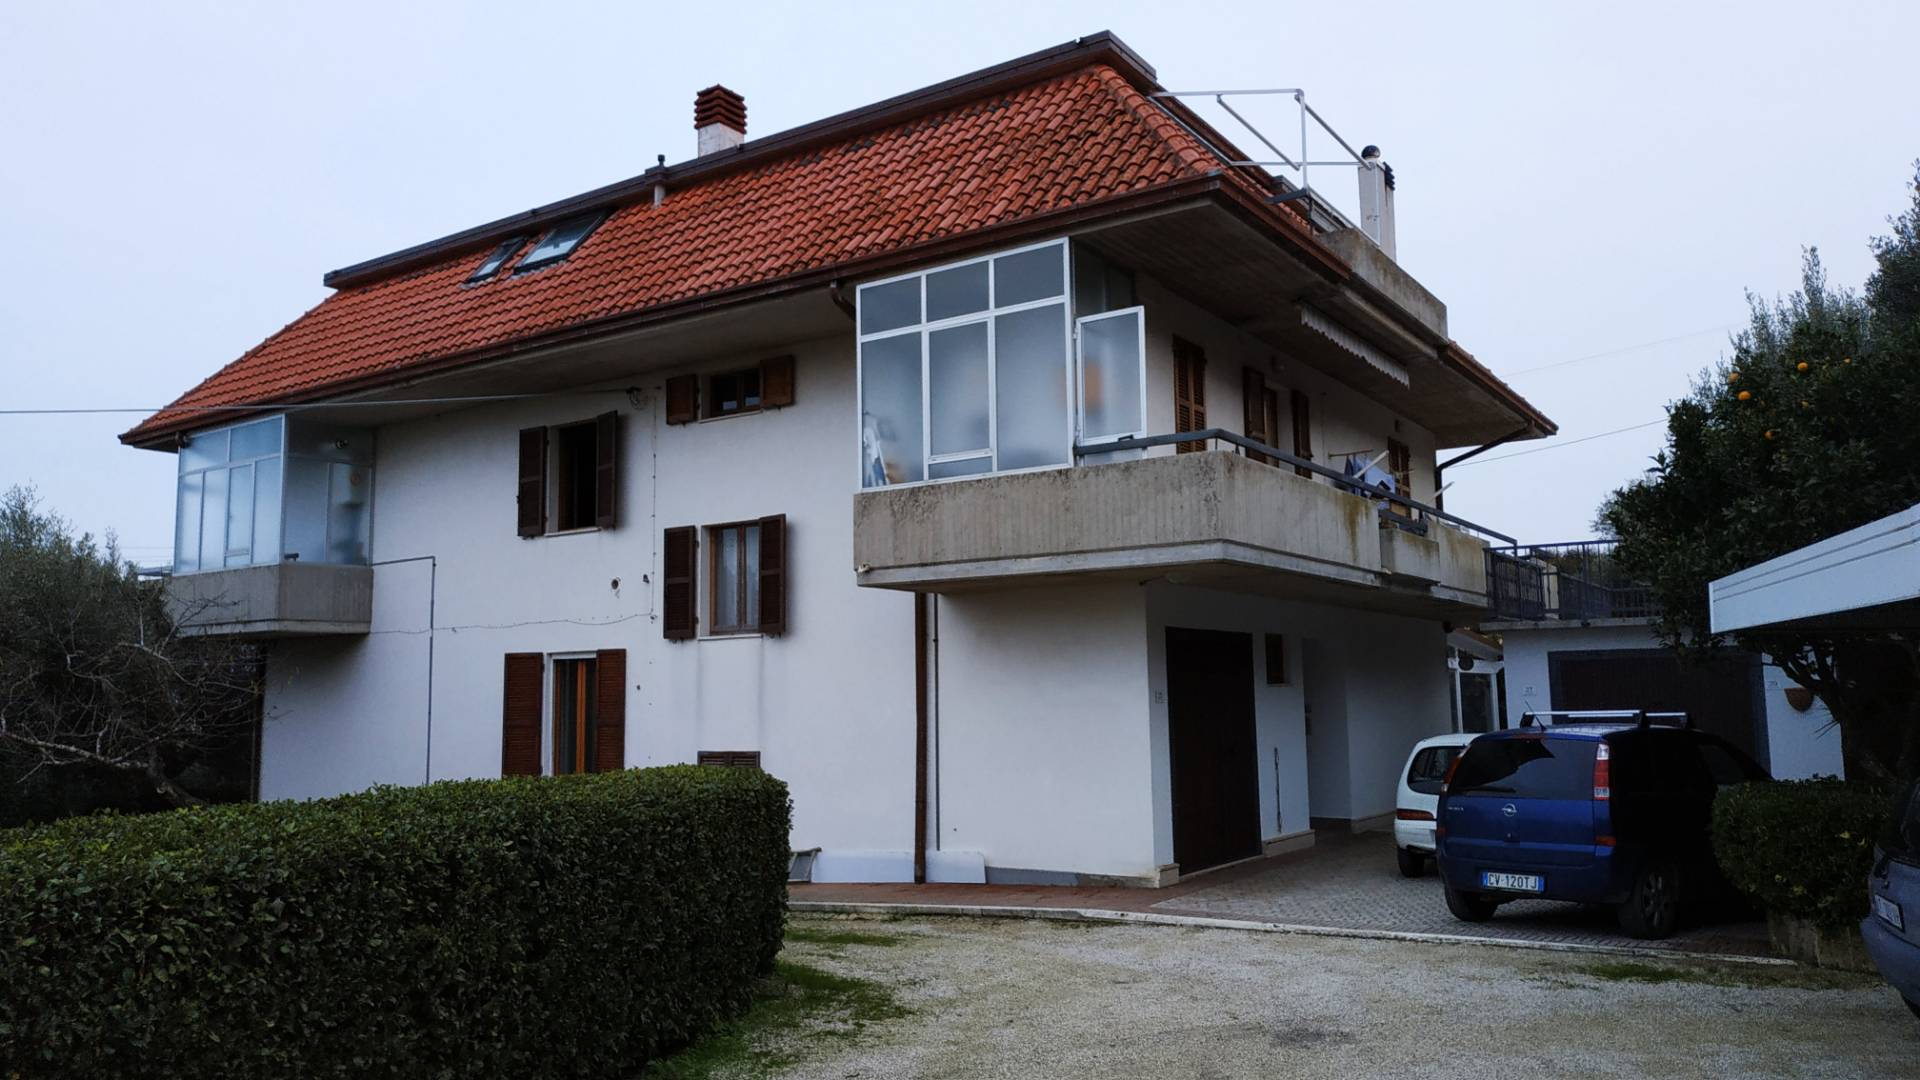 Appartamento in vendita a Grottammare, 8 locali, prezzo € 300.000 | CambioCasa.it